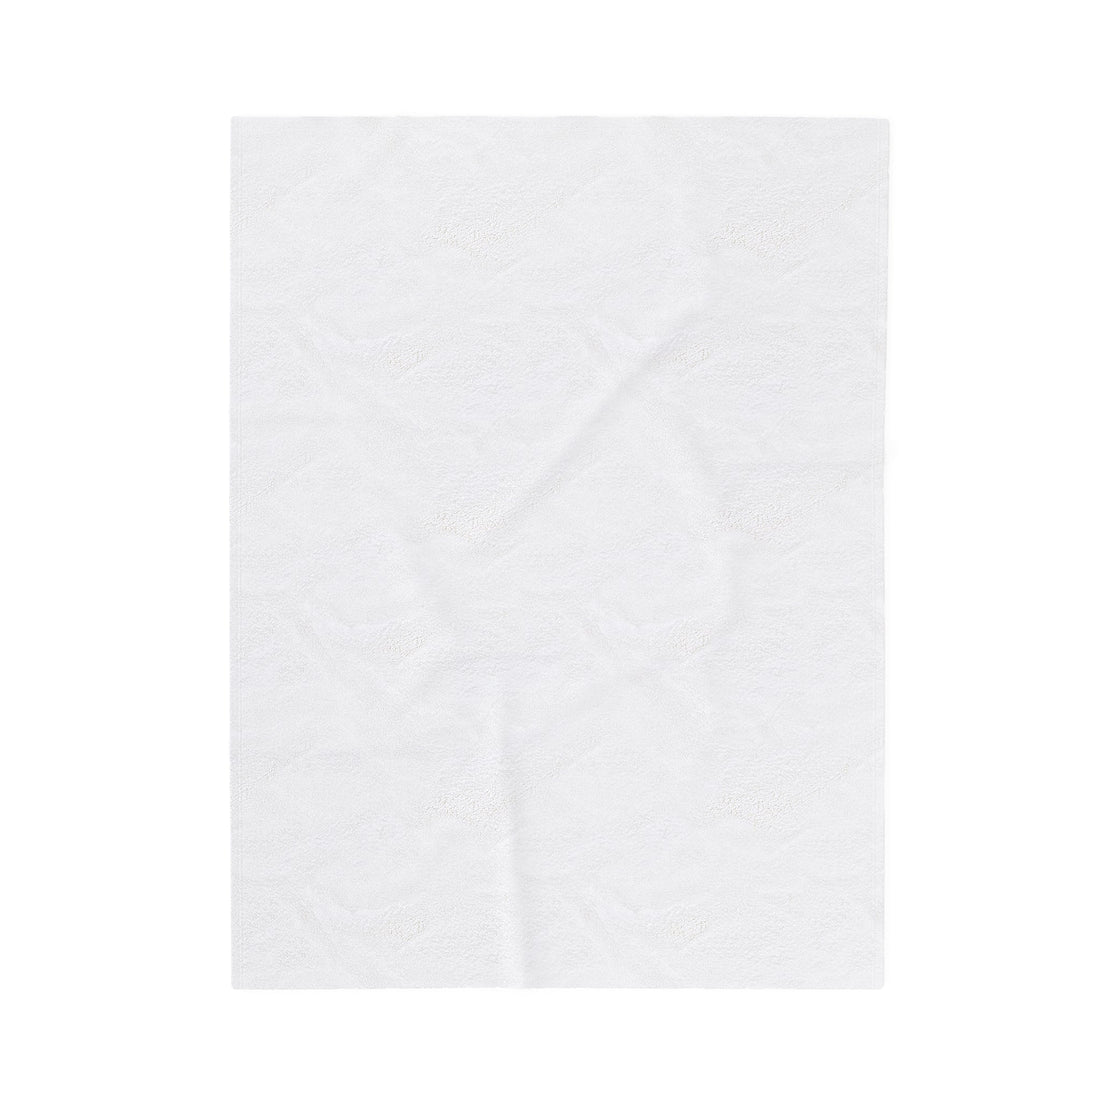 Nap Queen Velveteen Plush Blanket - All Over Prints - Positively Sassy - Nap Queen Velveteen Plush Blanket